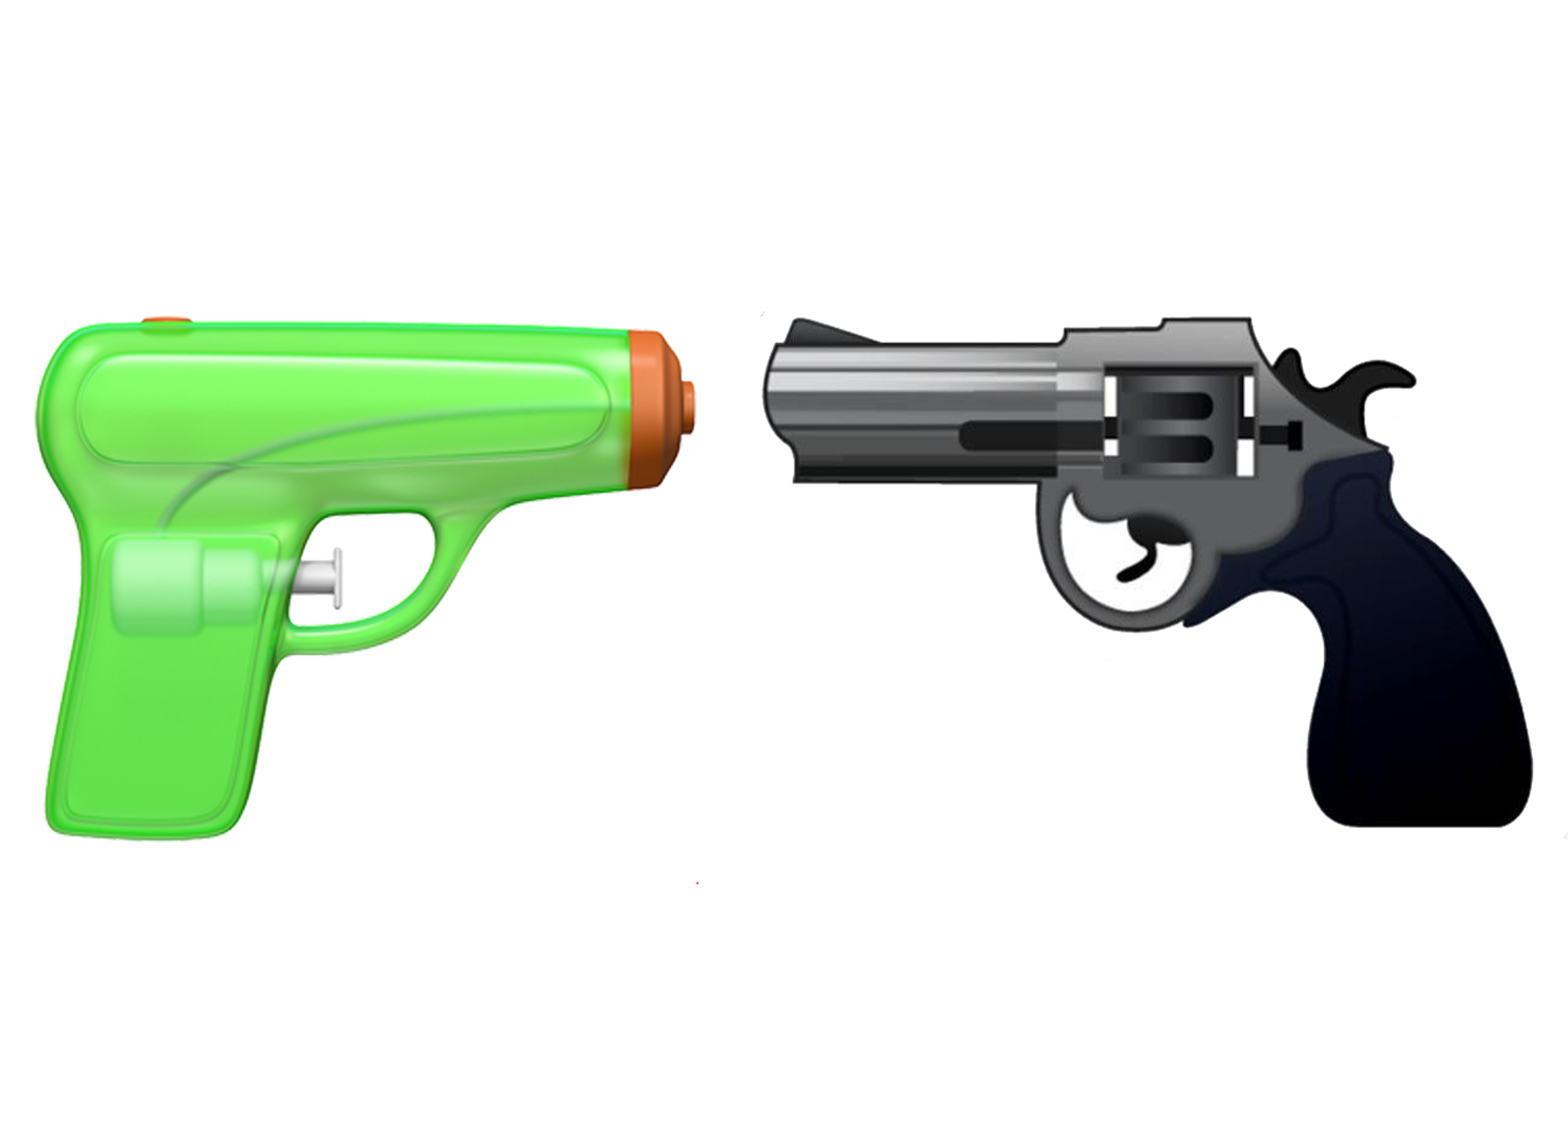 https://static.dezeen.com/uploads/2016/08/apple-changes-gun-emoji-to-water-pistol_dezeen_banner.jpg